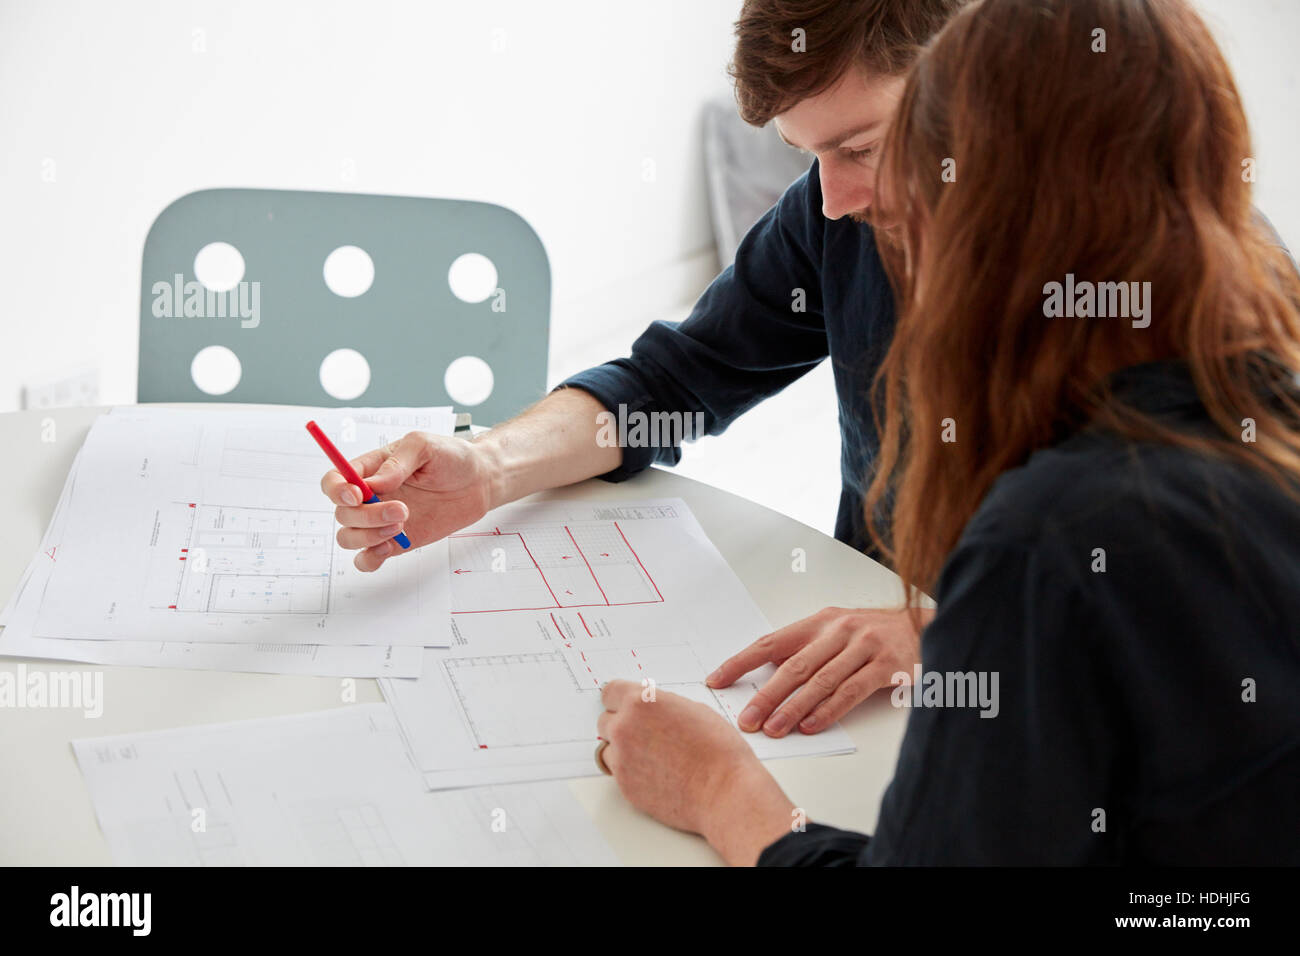 Un ufficio moderno. Due persone in una riunione per discutere i piani e disegni di disegni architettonici. Foto Stock